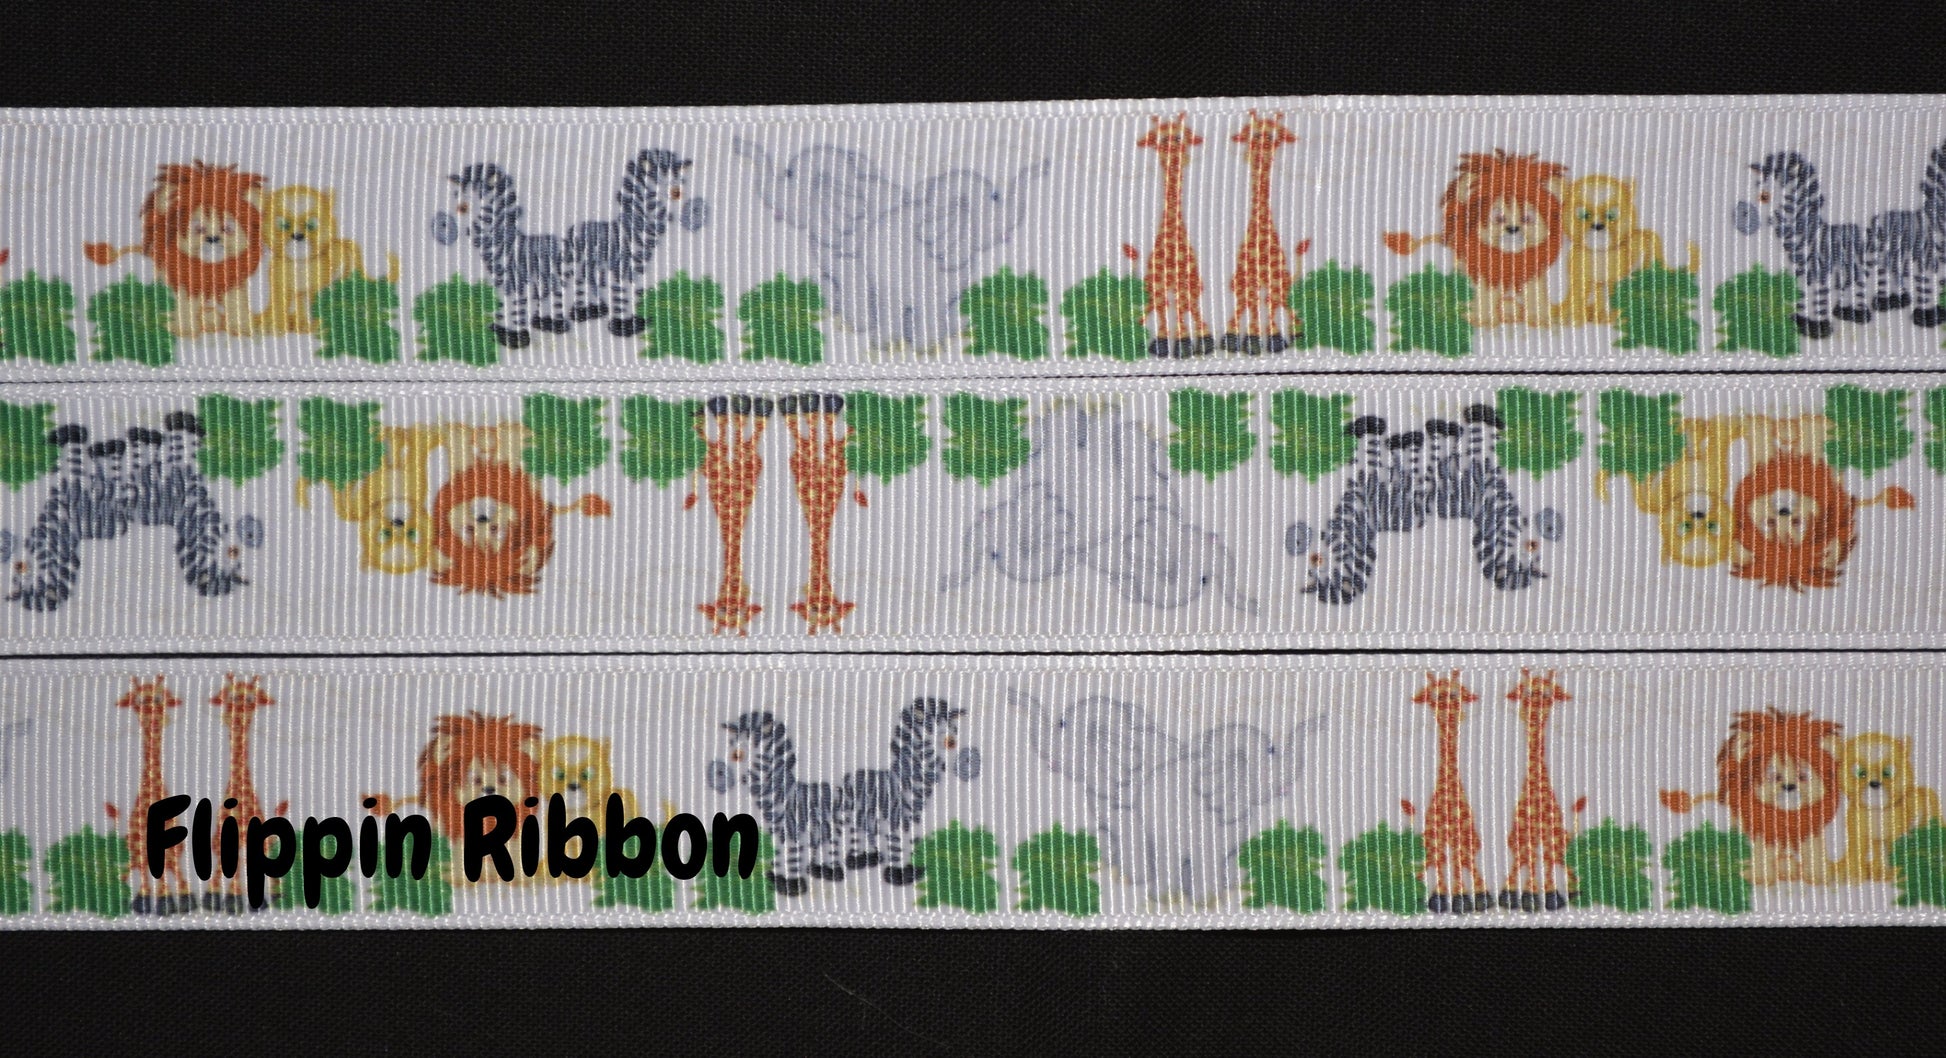 Noah's two by two animal ribbon - Flippin Ribbon